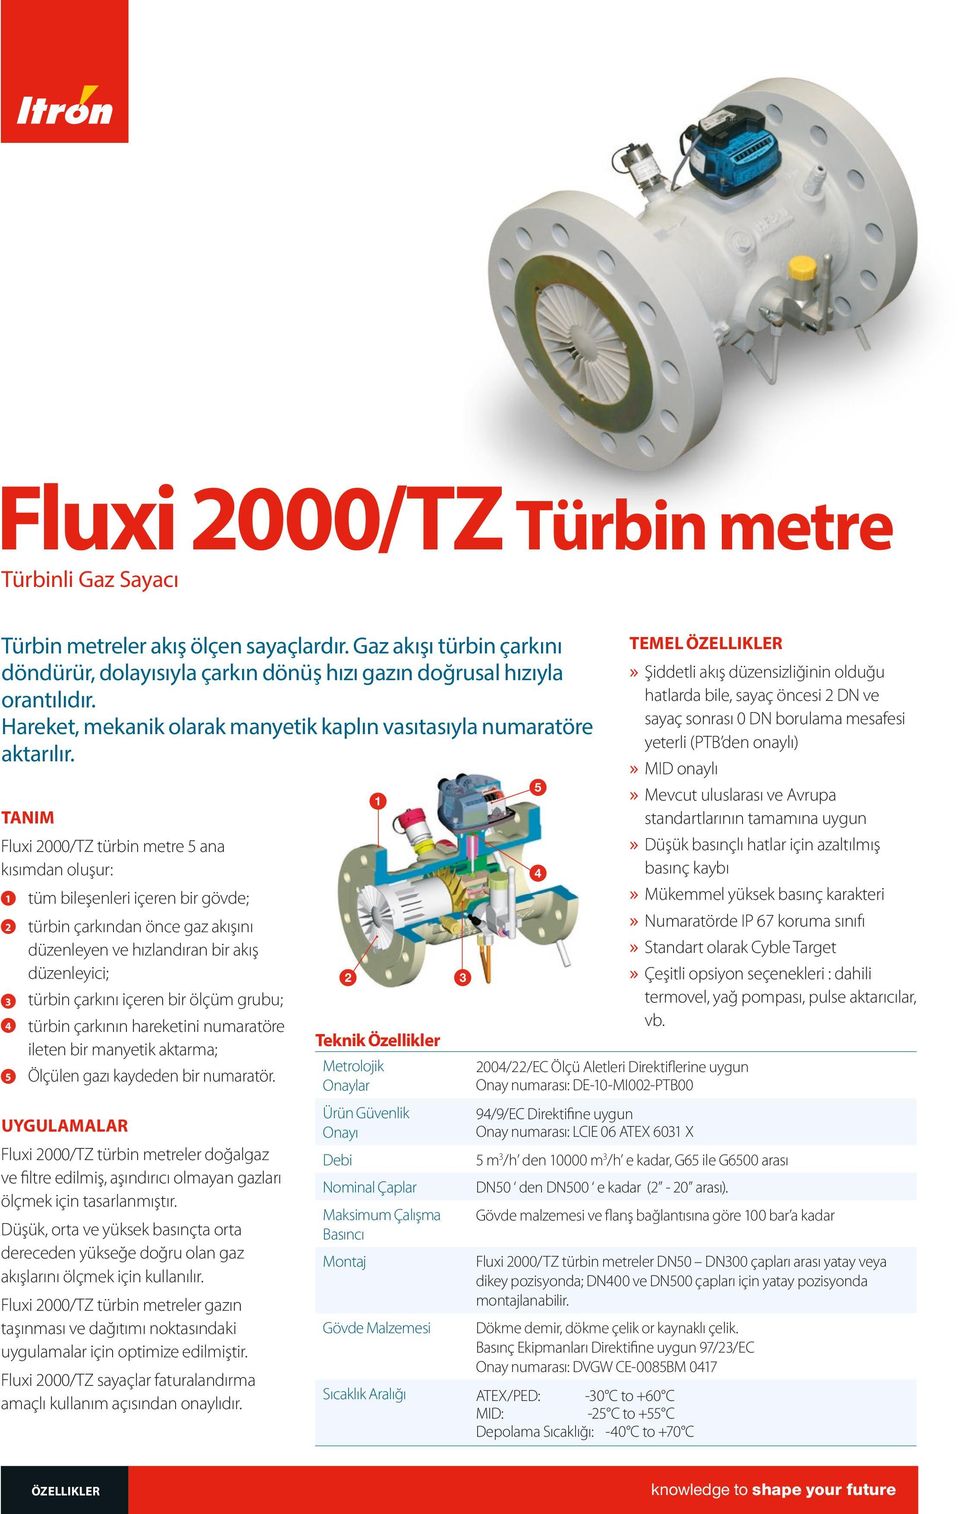 TANIM Fluxi 2000/TZ türbin metre 5 ana kısımdan oluşur: 1 tüm bileşenleri içeren bir gövde; 2 türbin çarkından önce gaz akışını düzenleyen ve hızlandıran bir akış düzenleyici; 3 türbin çarkını içeren